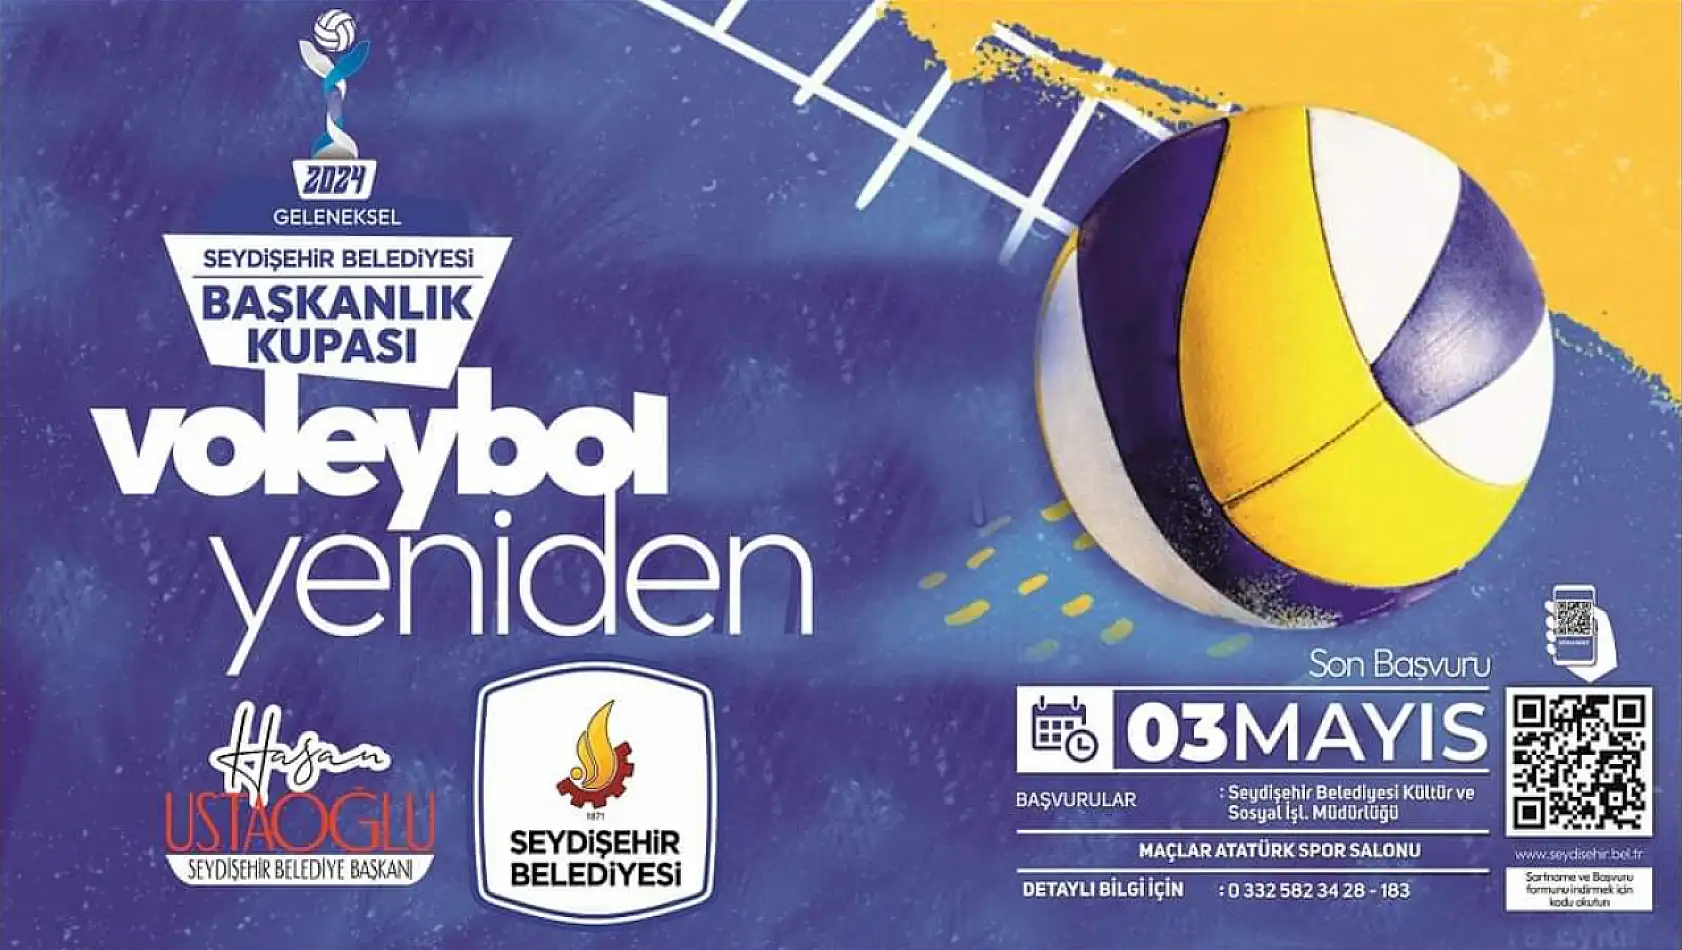 Seydişehir Belediyesi Başkanlık Kupası Voleybol Turnuvası Kuraları Çekildi!